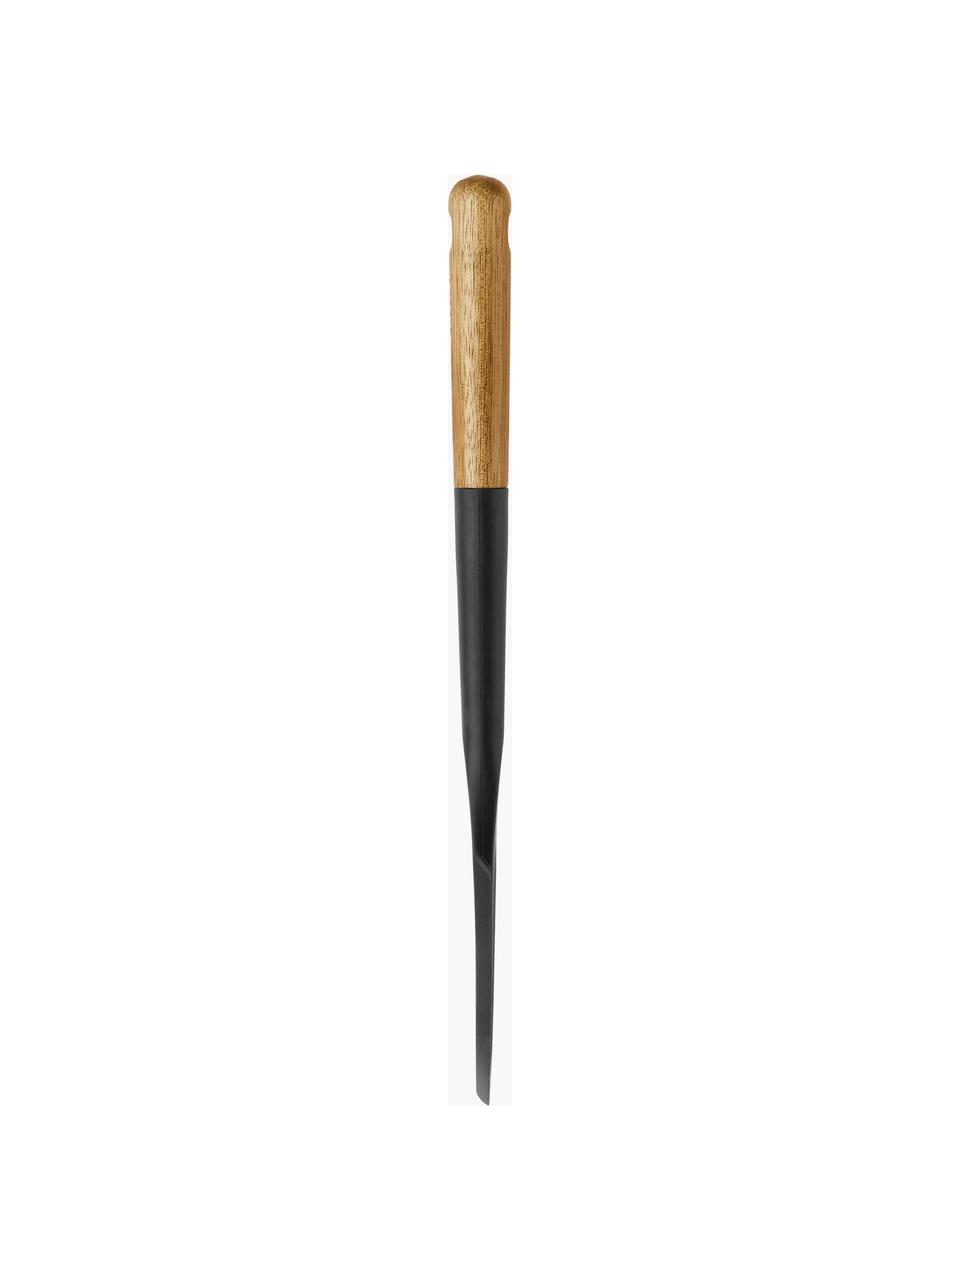 Espátula con madera de acacia Cook, Silicona, madera de acacia, Negro, madera oscura, L 30 cm